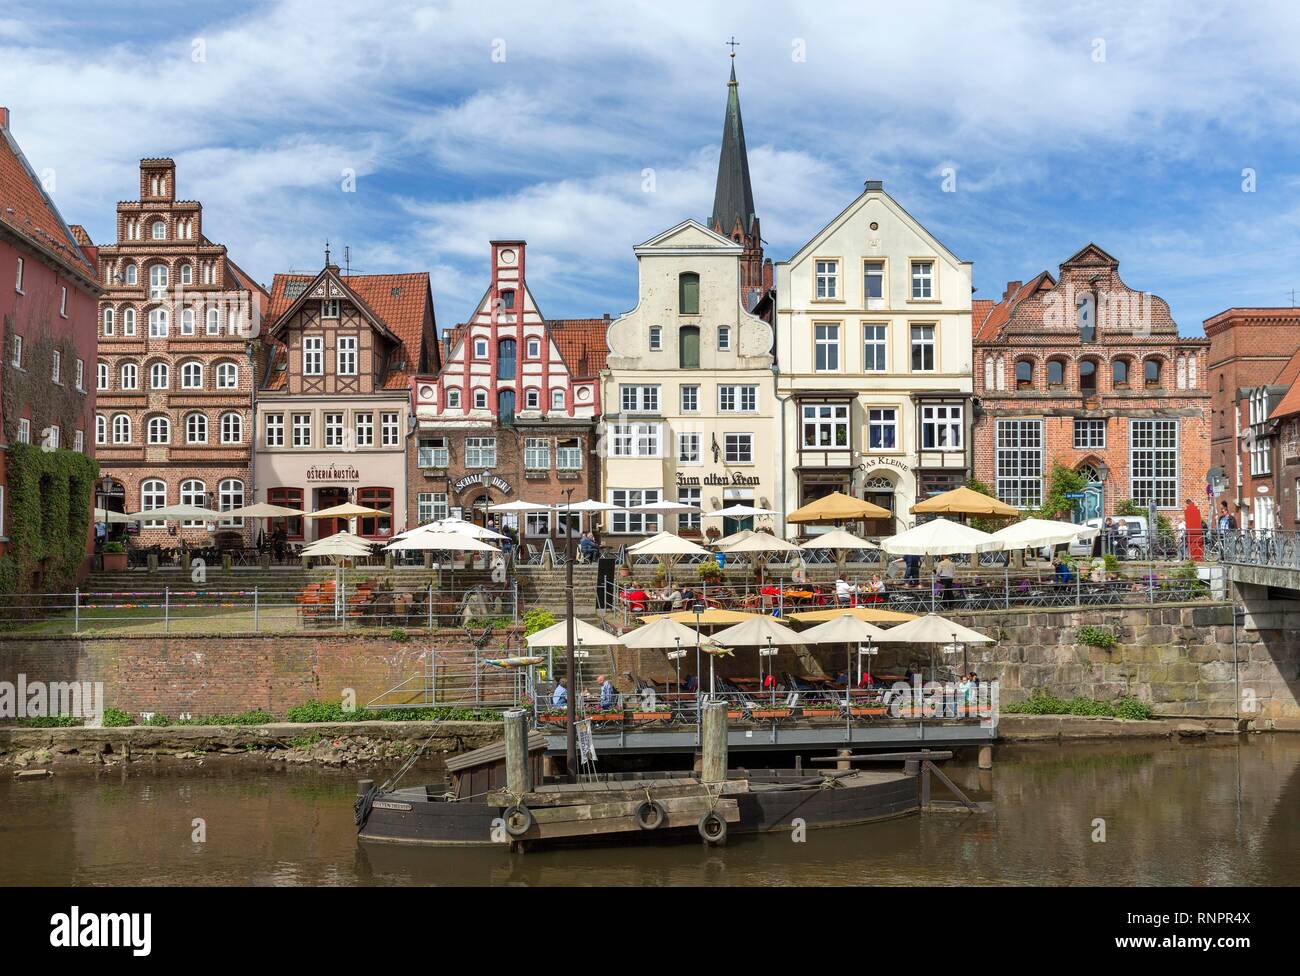 Historische Stadthäuser und Häuser Kaufmannshäuser, alter Hafen, Altstadt, Lüneburg, Niedersachsen, Deutschland Stockfoto